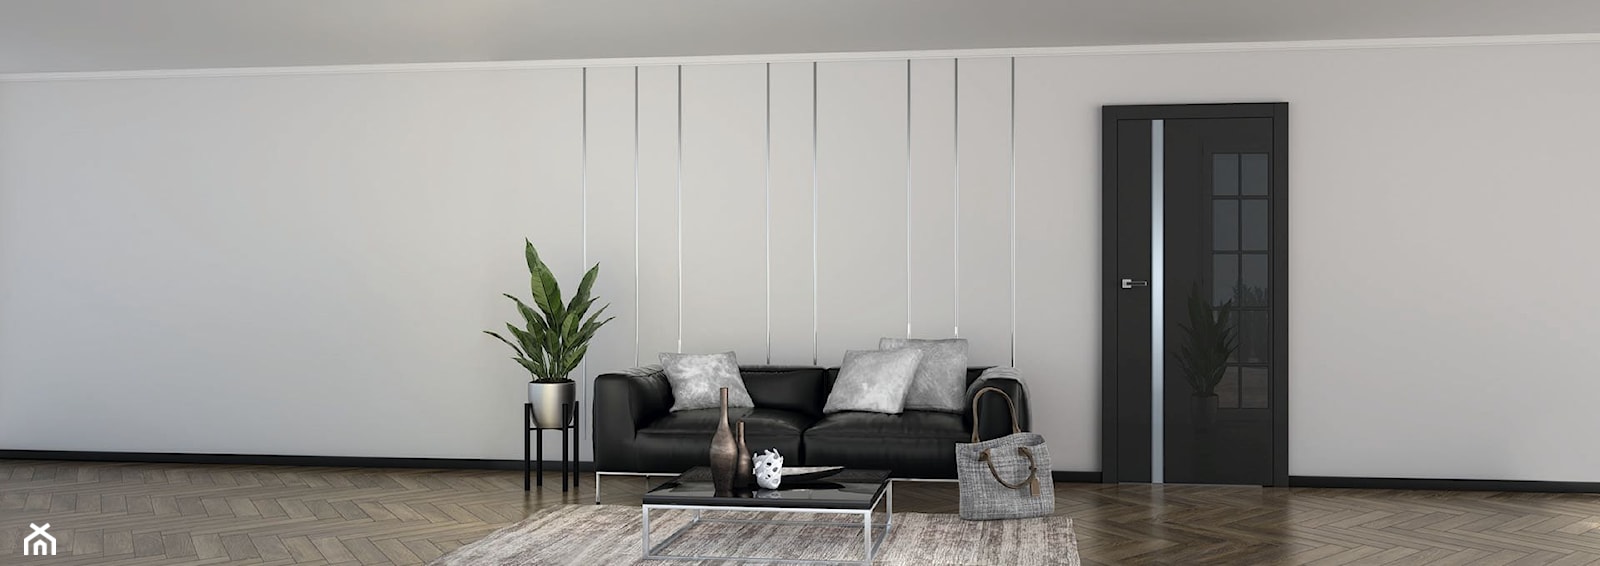 Vetro - Duży biały salon, styl minimalistyczny - zdjęcie od DRE - Homebook